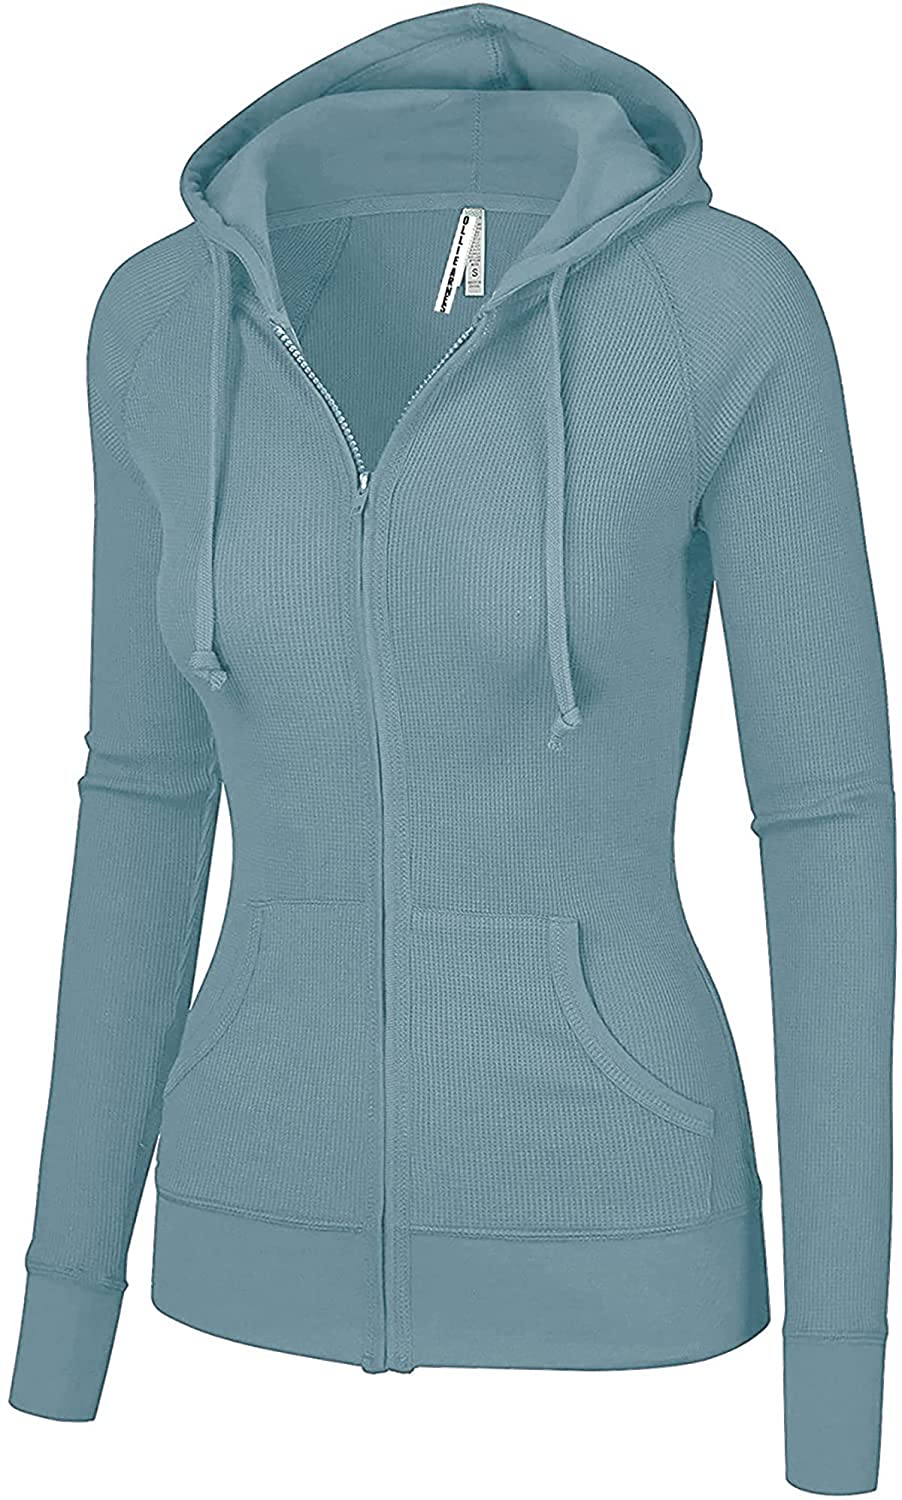 OLLIE ARNES Womens Thermal Long Hoodie Zip Up Jacket Sweater Tops Thermal_Navy XL 